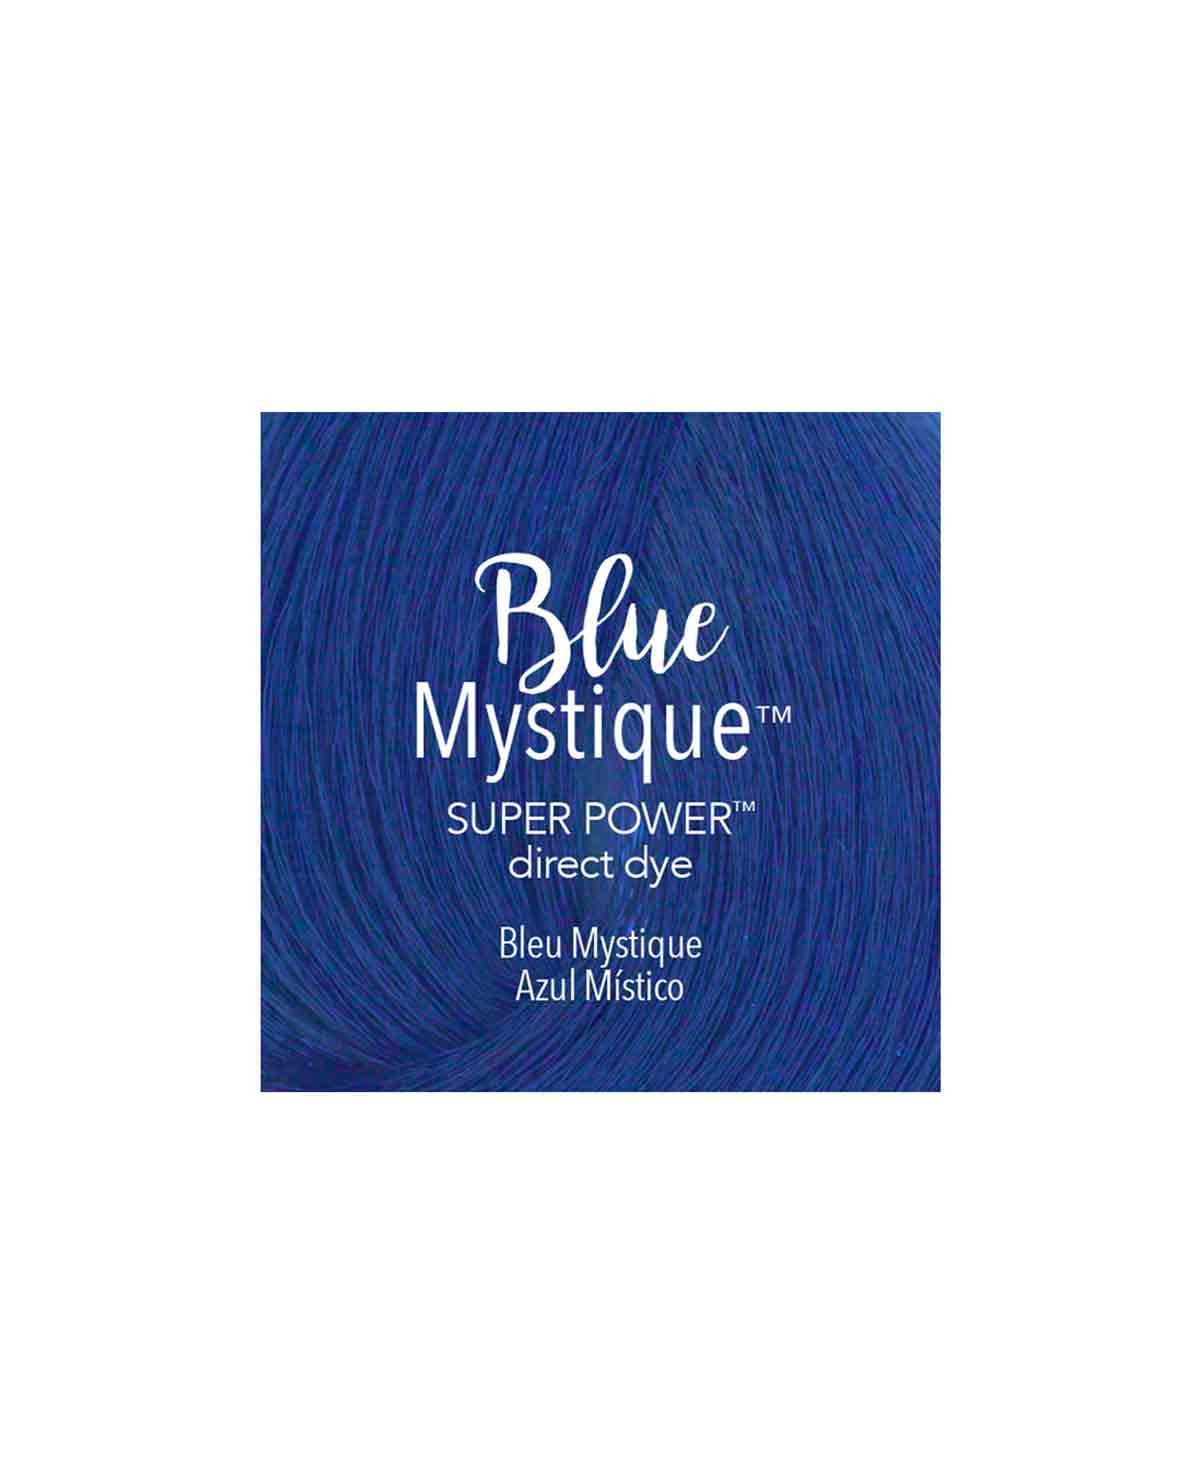 Mydentity - DDSP Blue Mystique 85g